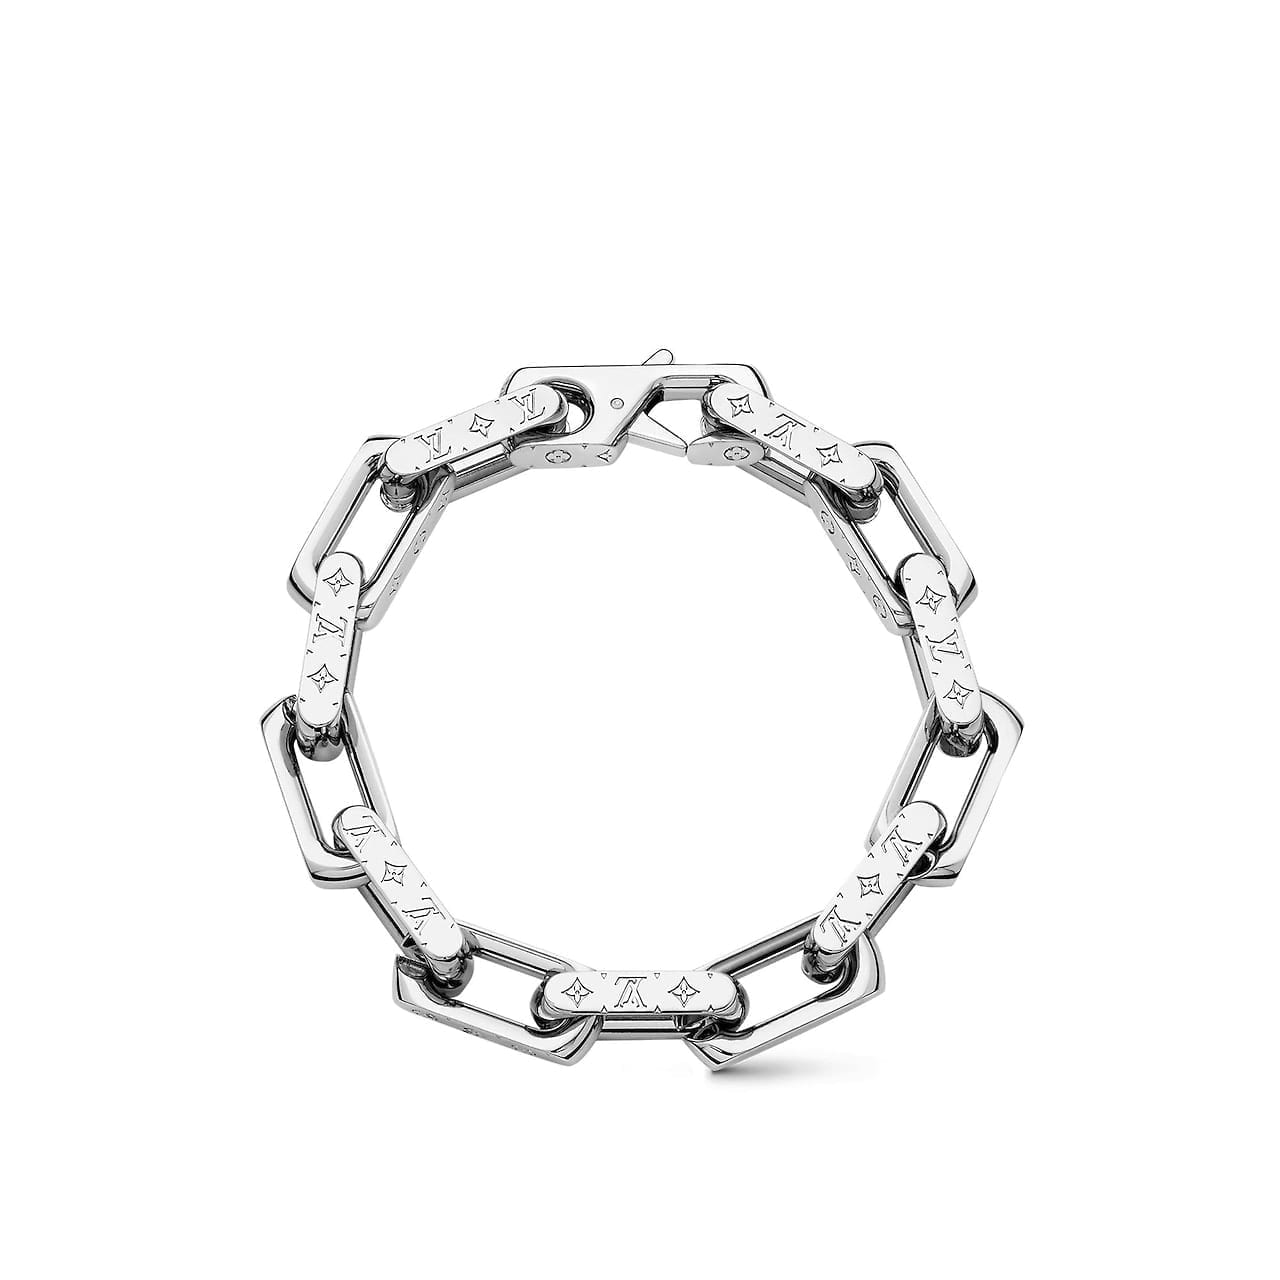 Authentic LOUIS VUITTON Diamond Bracelet #260-006-303-5988